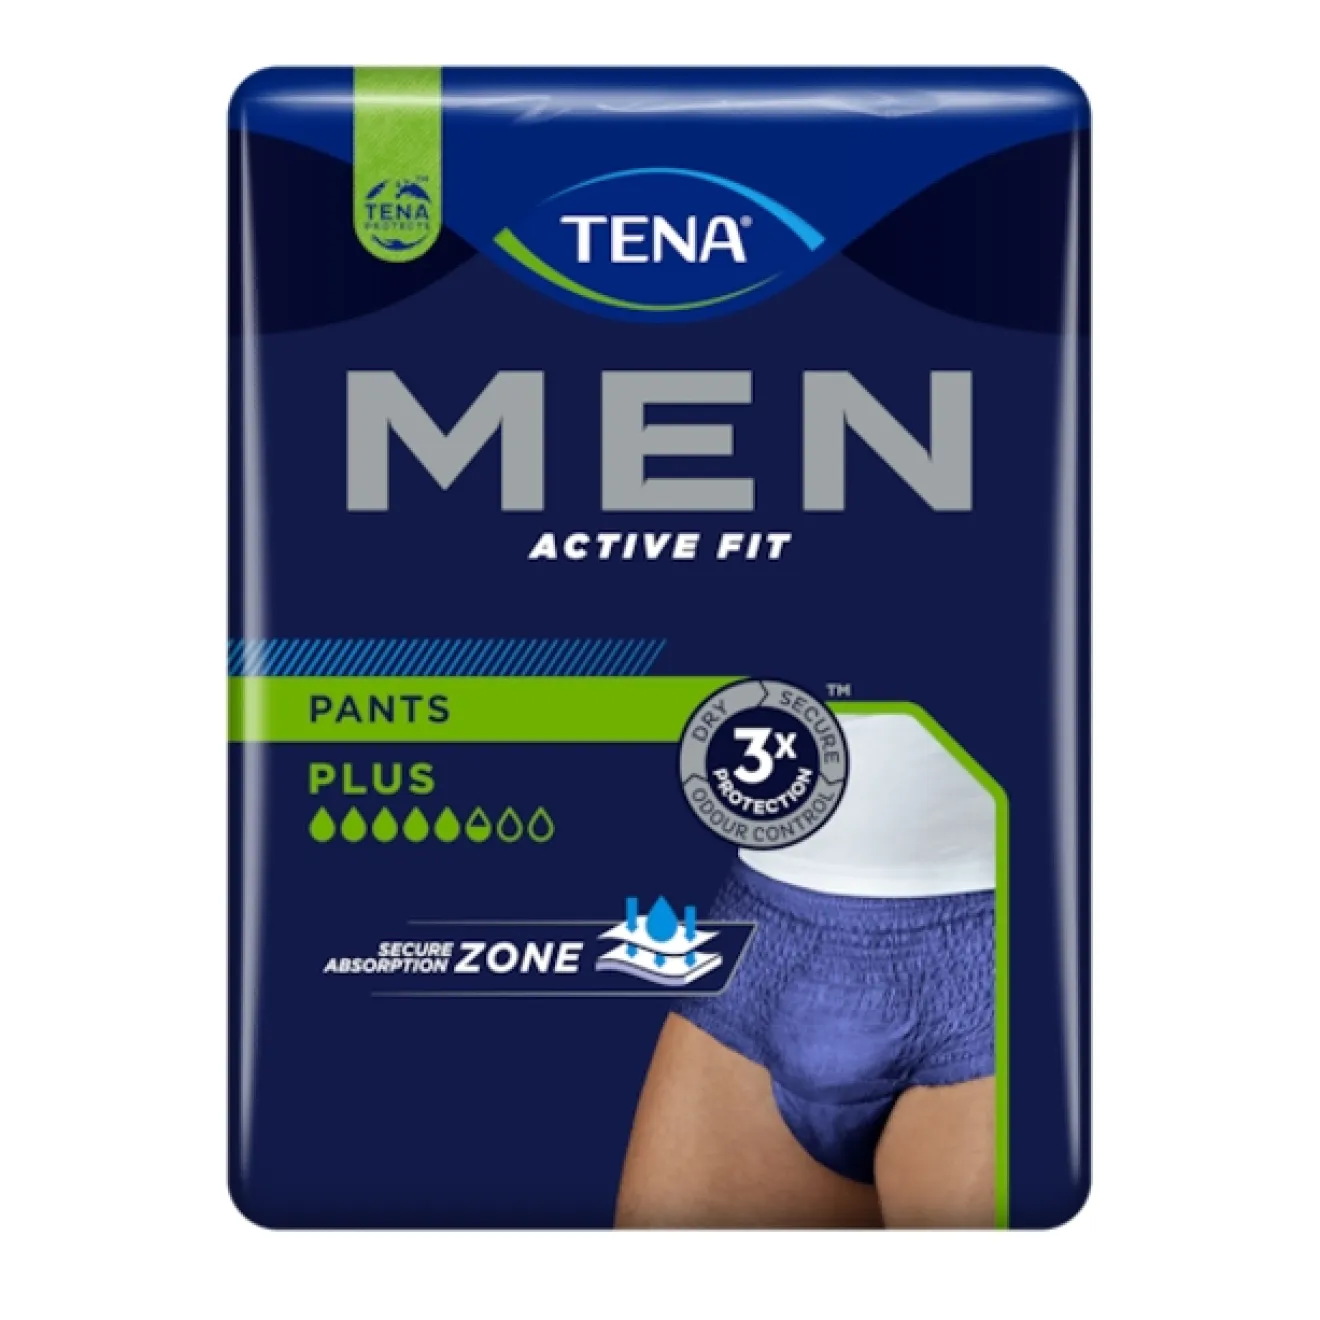 TENA MEN Active Fit Inkontinenz Pants plus S/M blau 4x12 ST